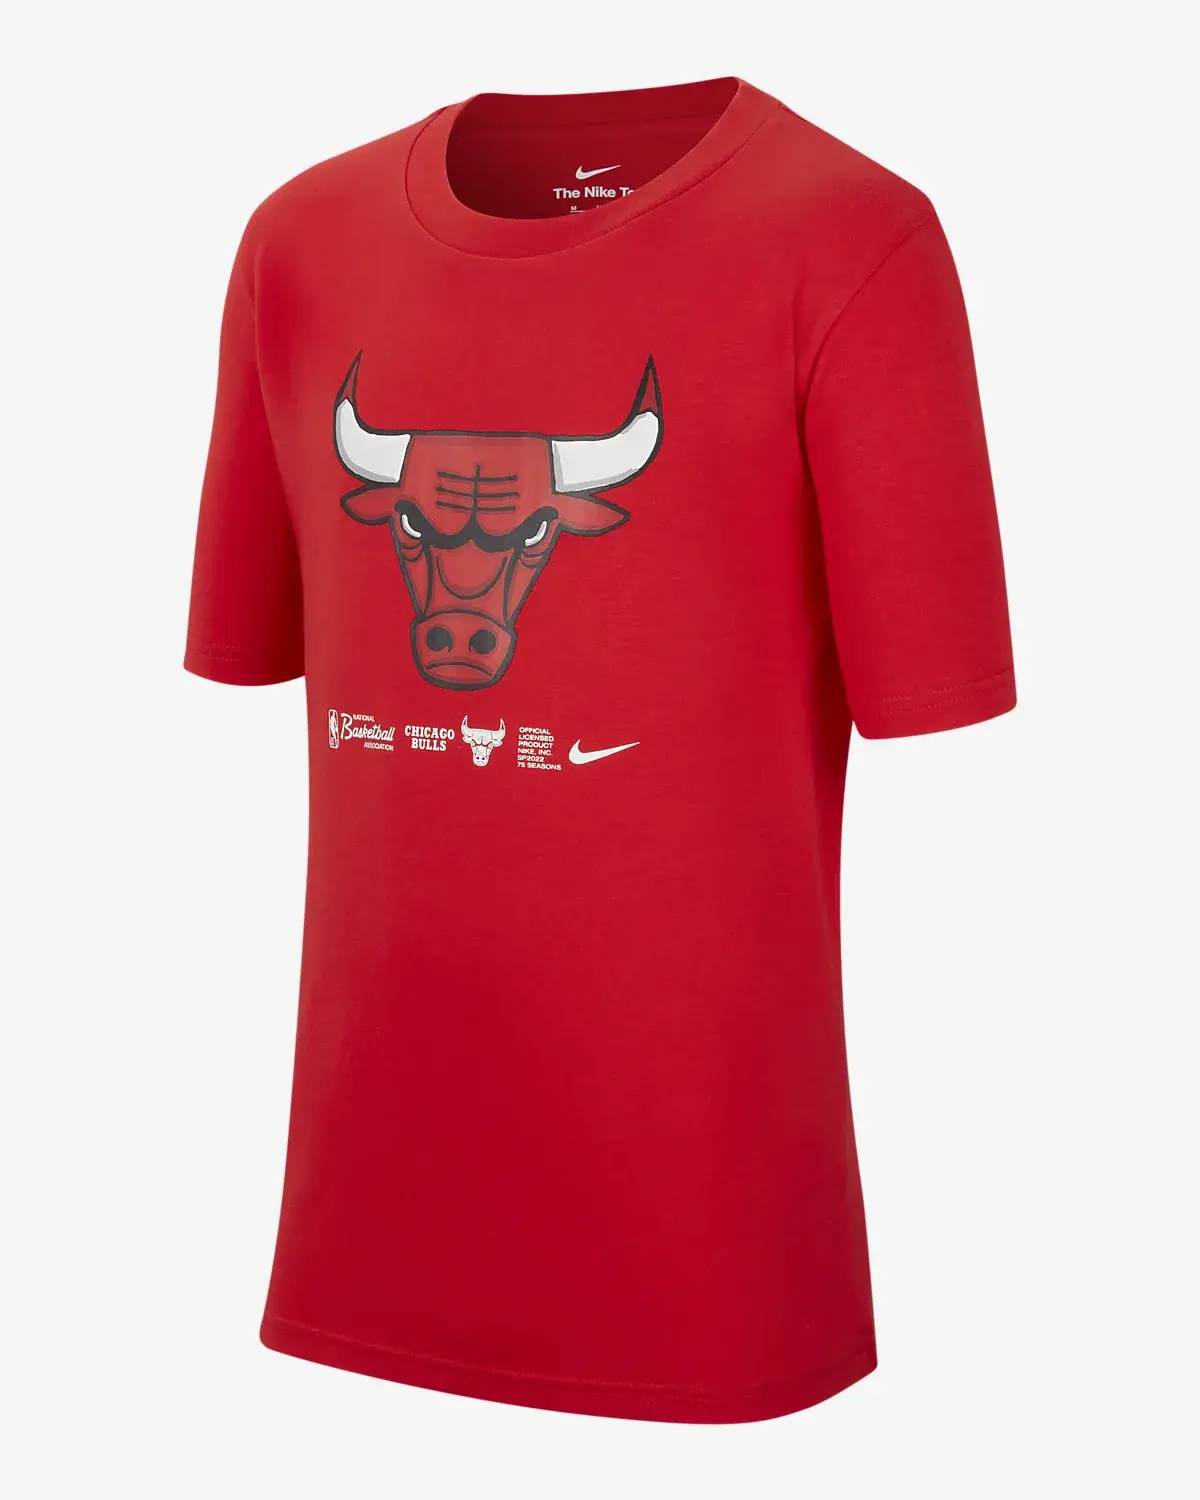 Nike Chicago Bulls. 1